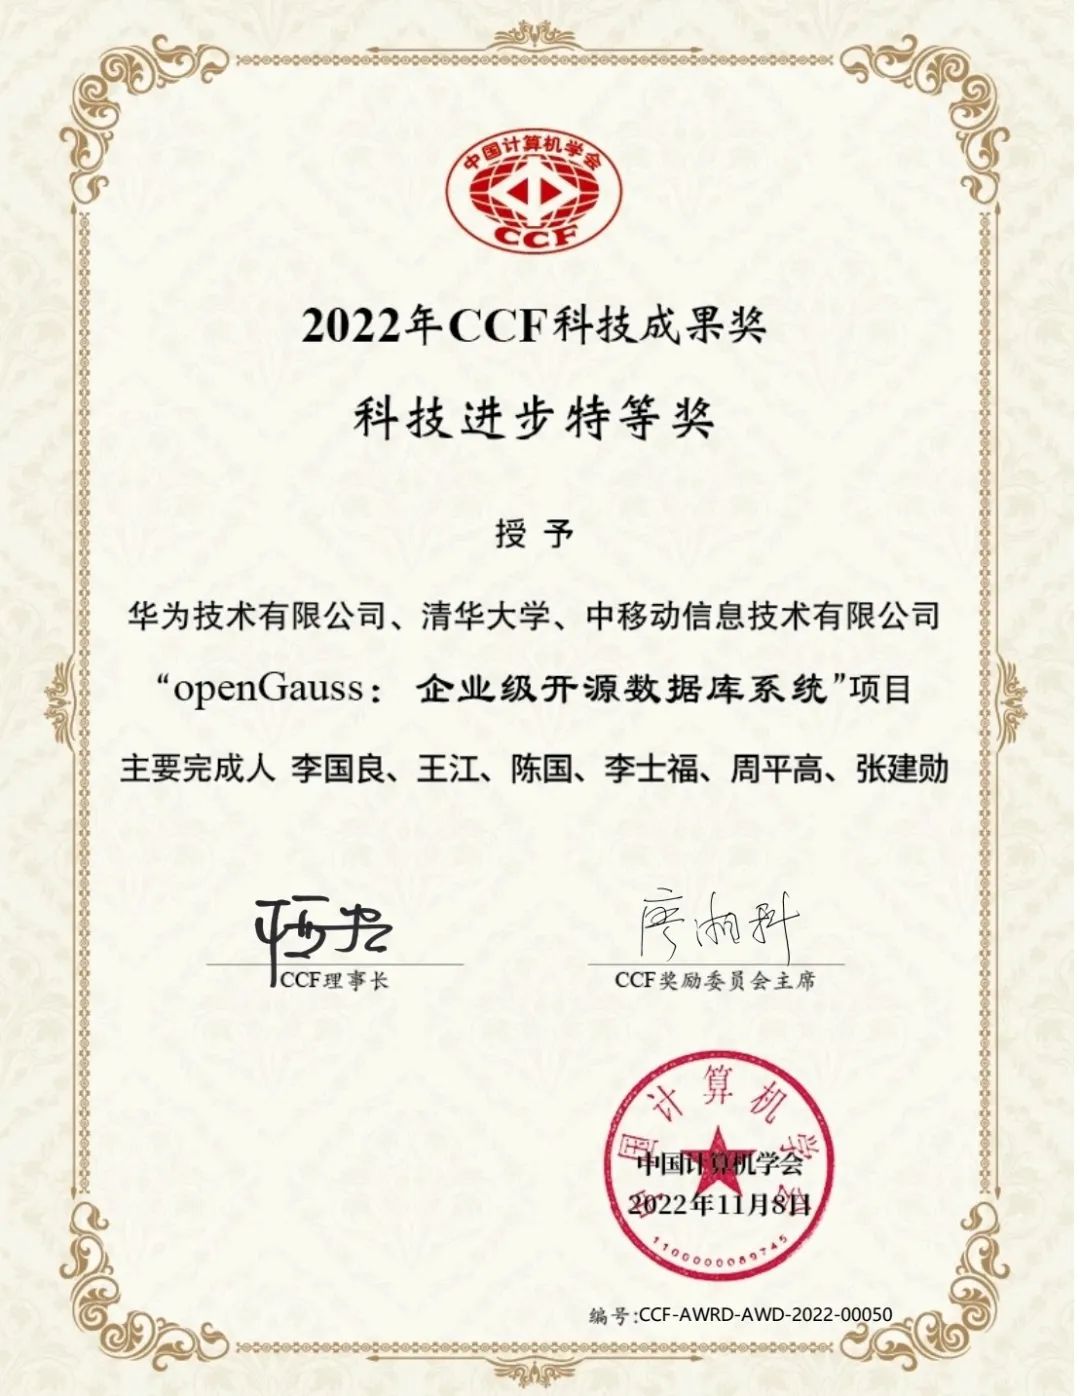 openGauss数据库荣获中国计算机学会(CCF)科技成果特等奖_中国移动_02